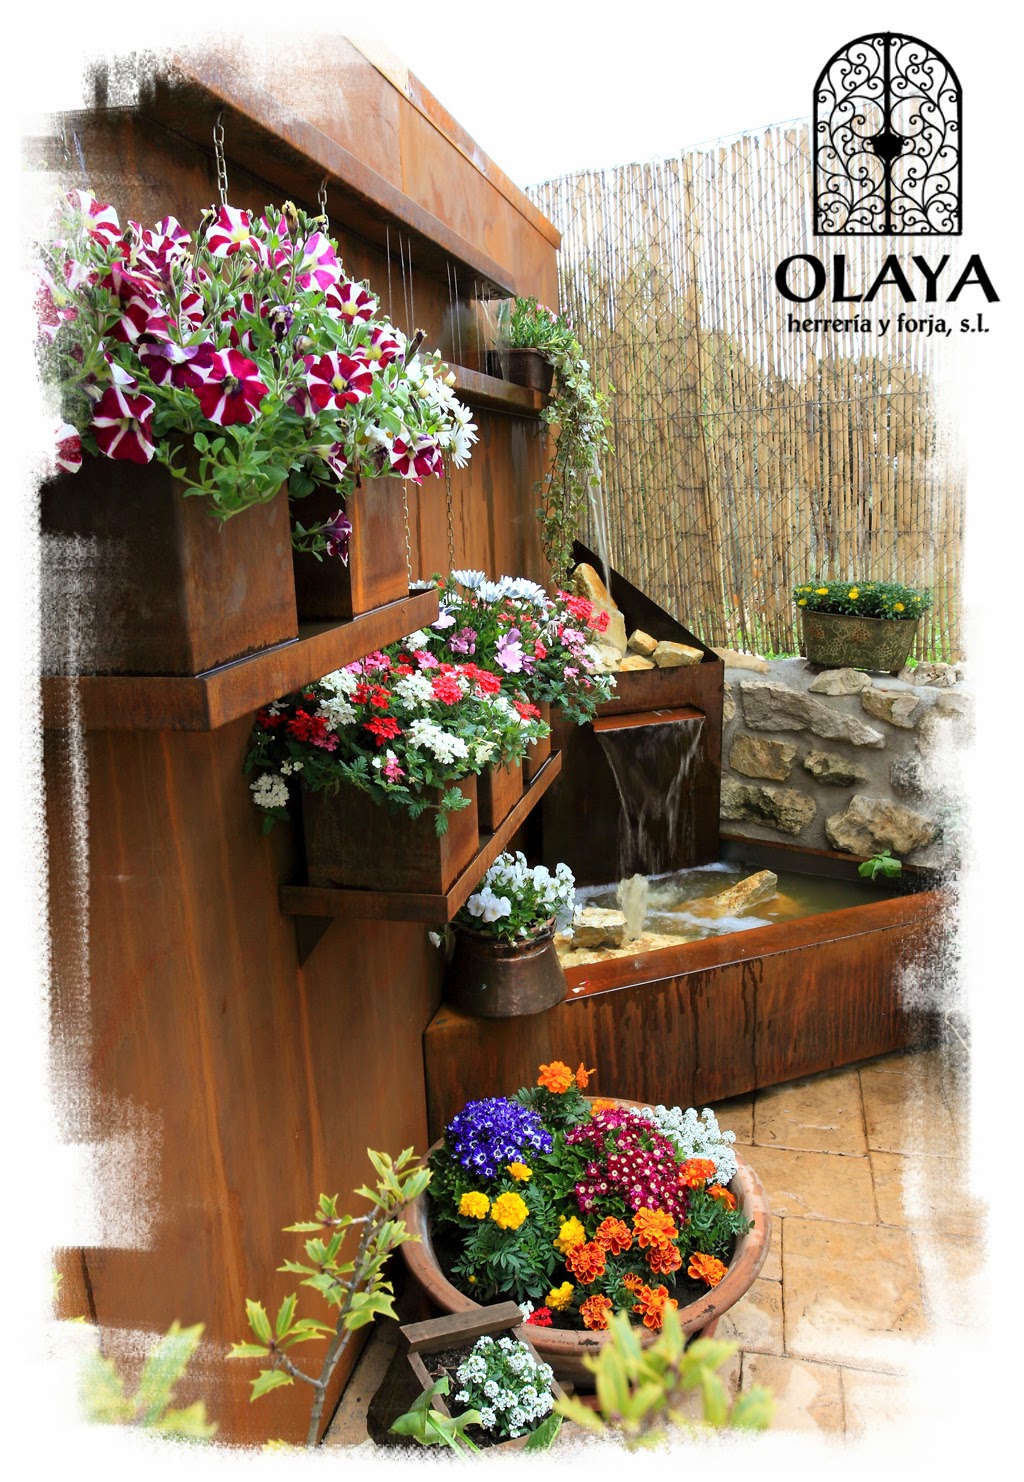 Conjunto de flores de temporada y fuente de acero corten OLAYA, herrería y forja, s.l.